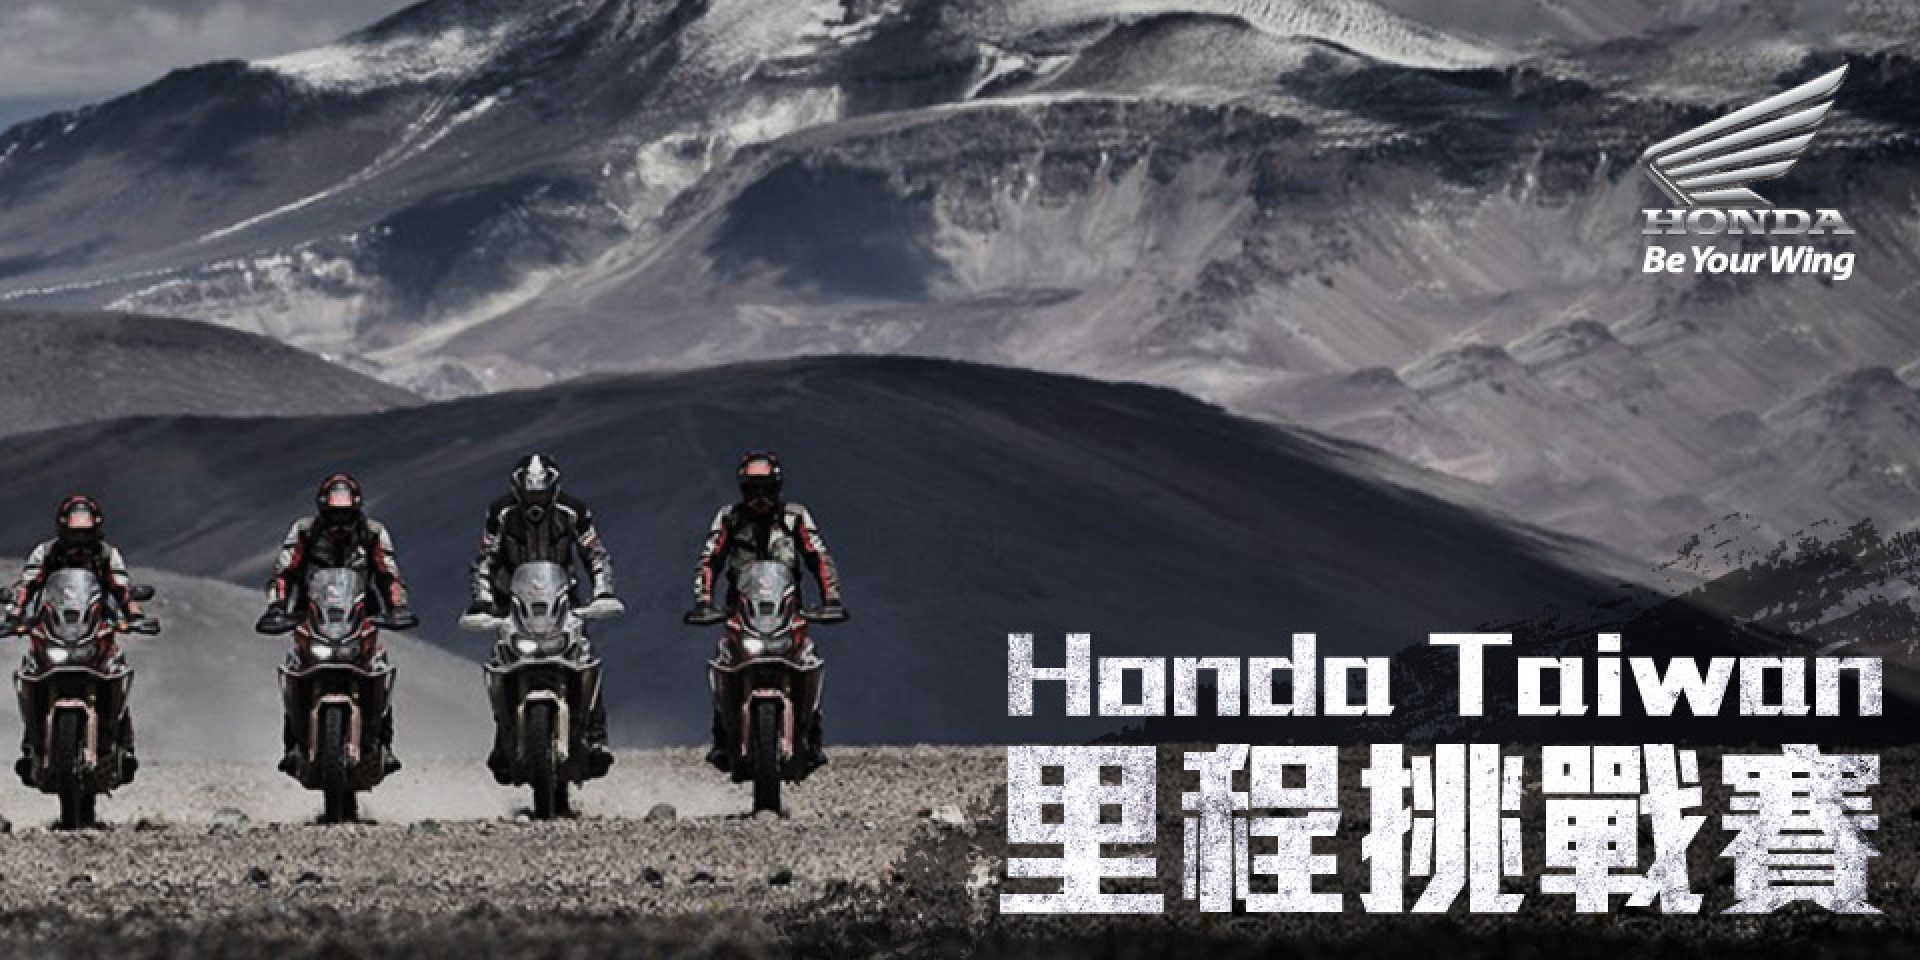 官方新聞稿。2018 Honda Taiwan FUN Club官網正式上線  里程挑戰賽活動開跑